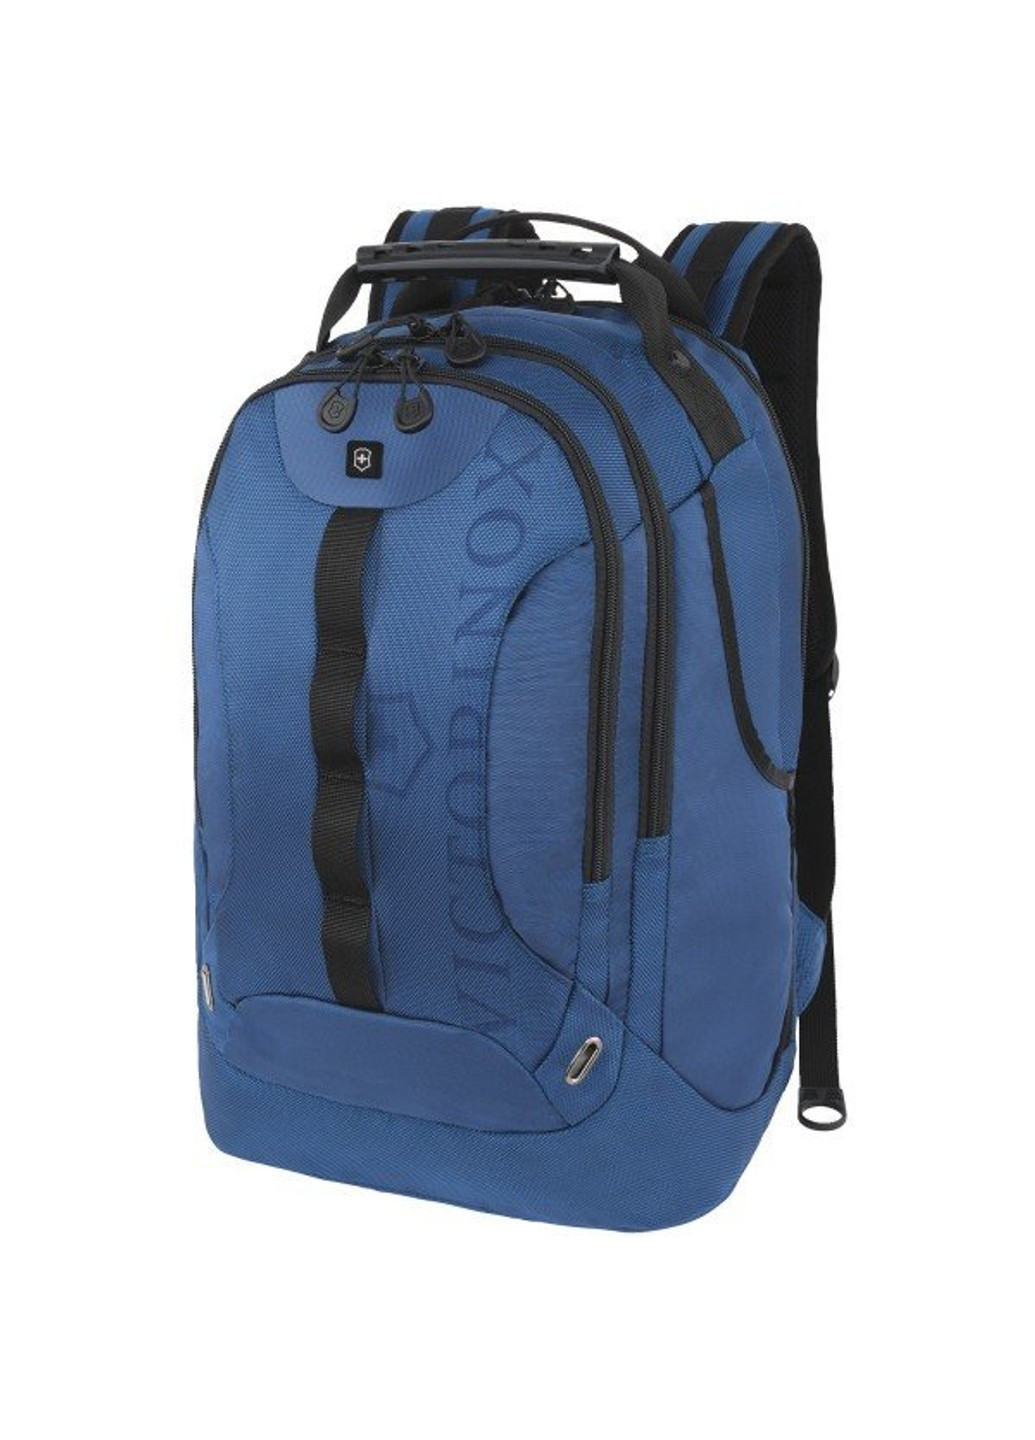 Синій рюкзак VX SPORT Trooper / Blue Vt311053.09 Victorinox Travel (262449724)